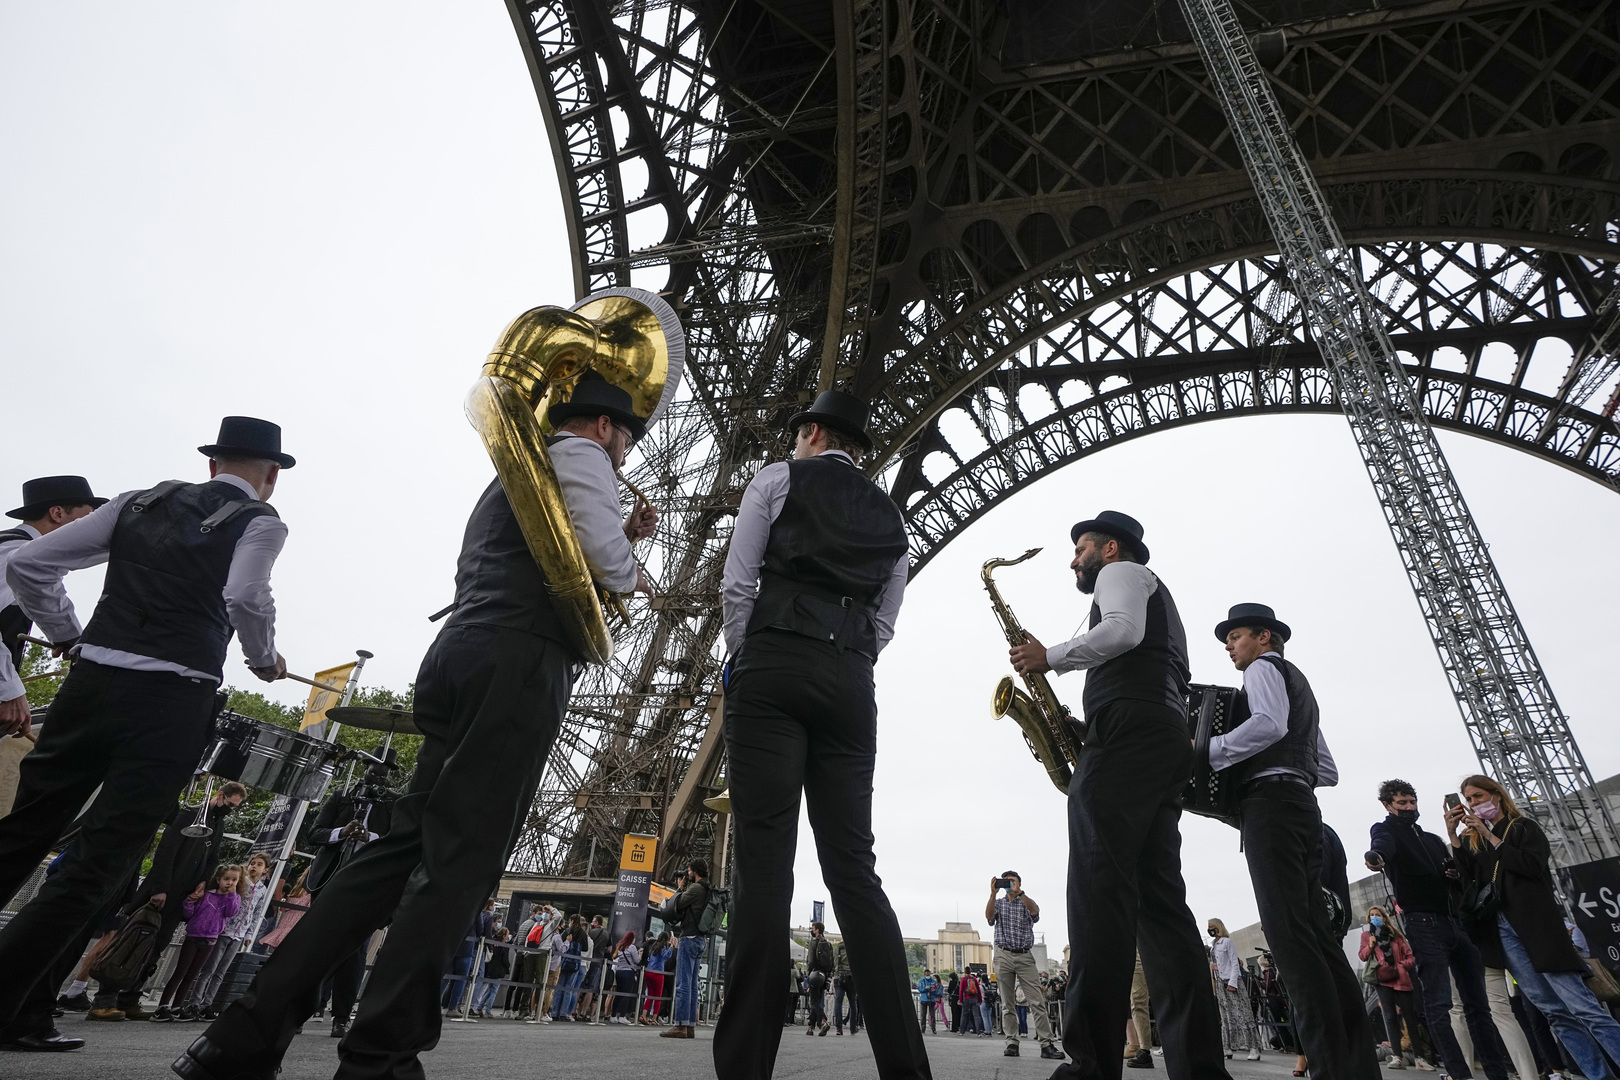 فرنسا تشترط شهادة كوفيد لزيارة المعالم السياحية